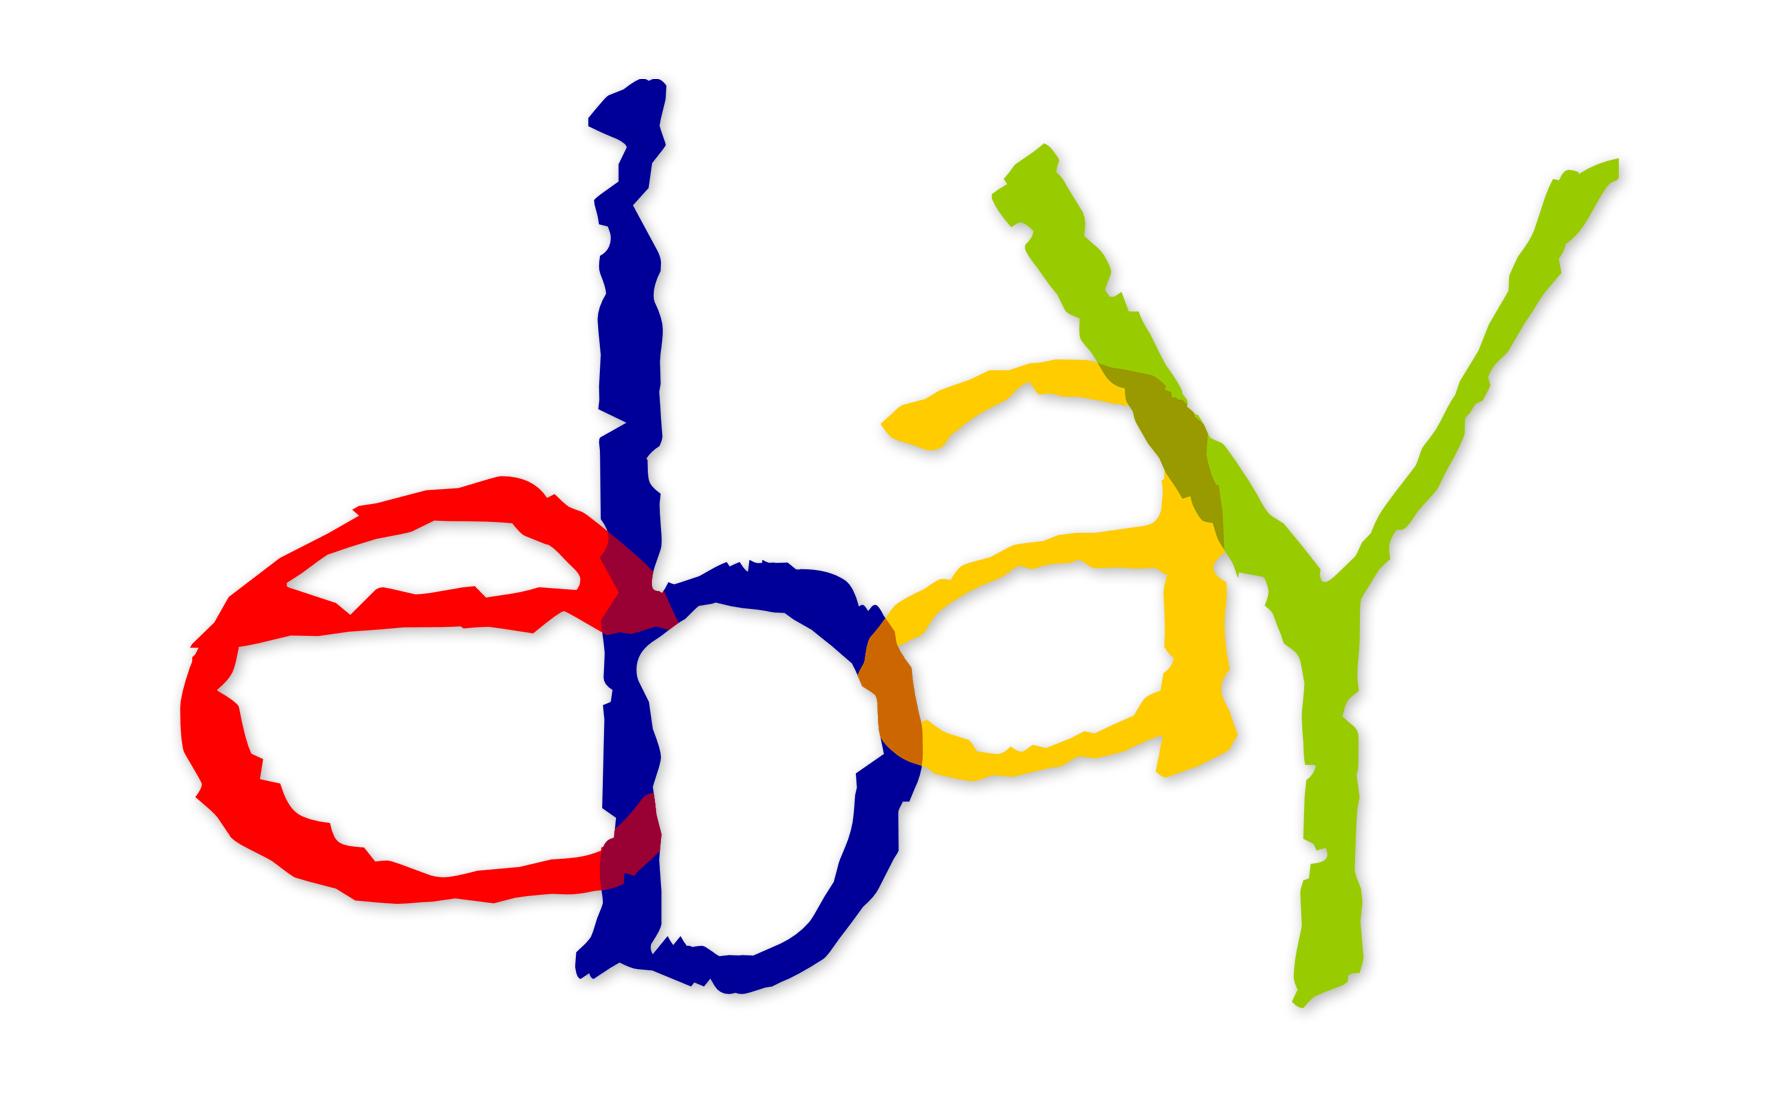 Logo Ebay HD Image Free PNG Image